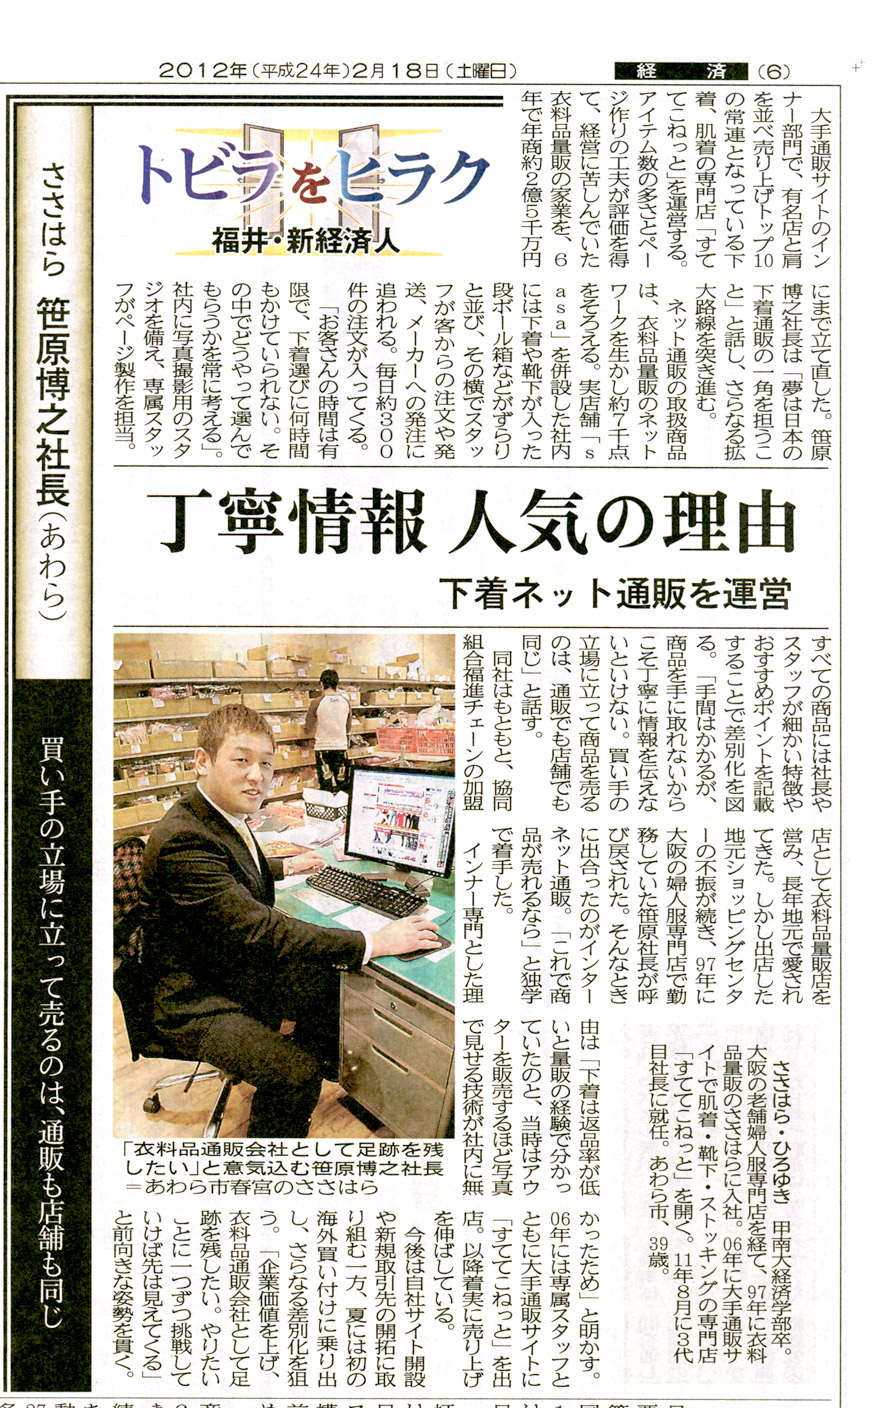 福井新聞「福井・新経済人」にて掲載されました - 下着専門商社 すててこ株式会社